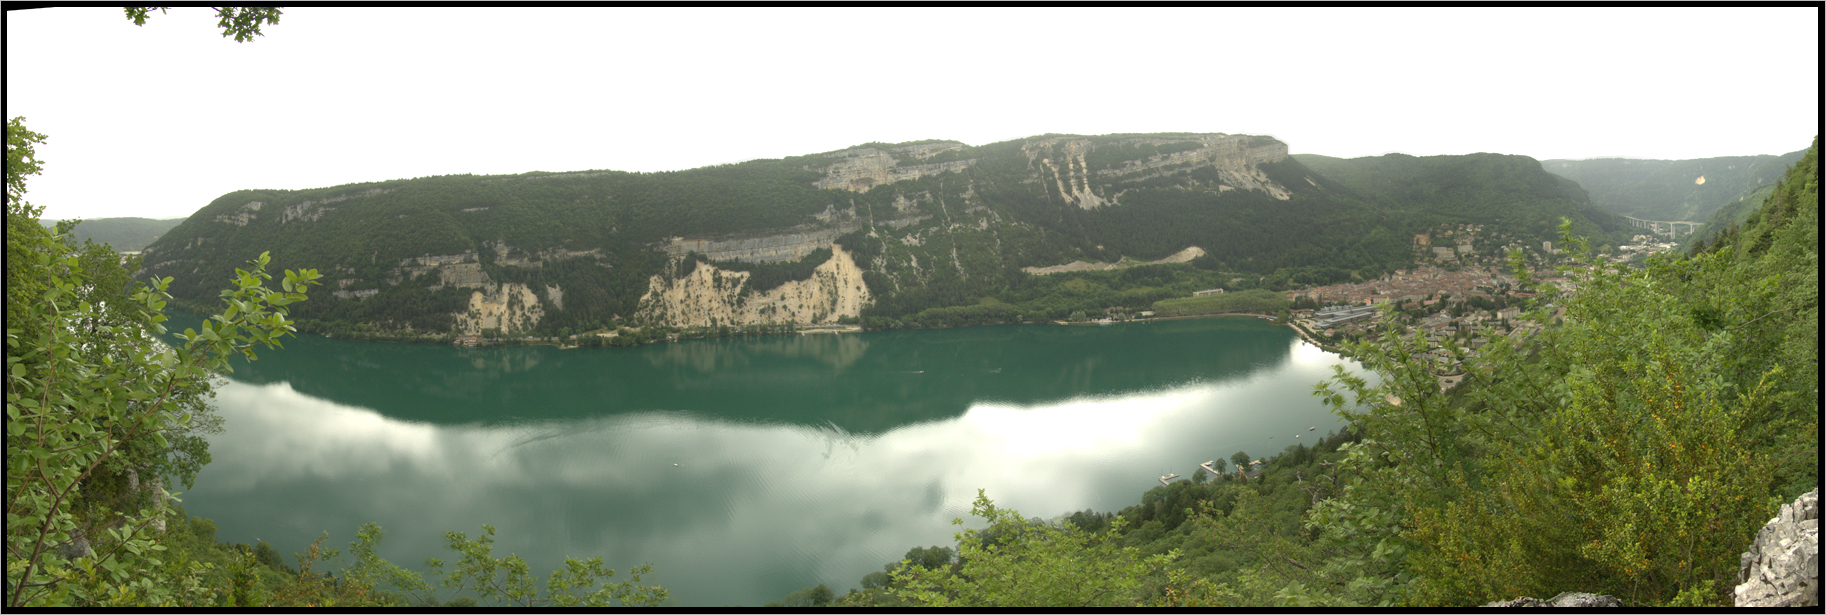 Lac de Nantua (01), depuis les Doigts du Diable, France, Juillet 2006